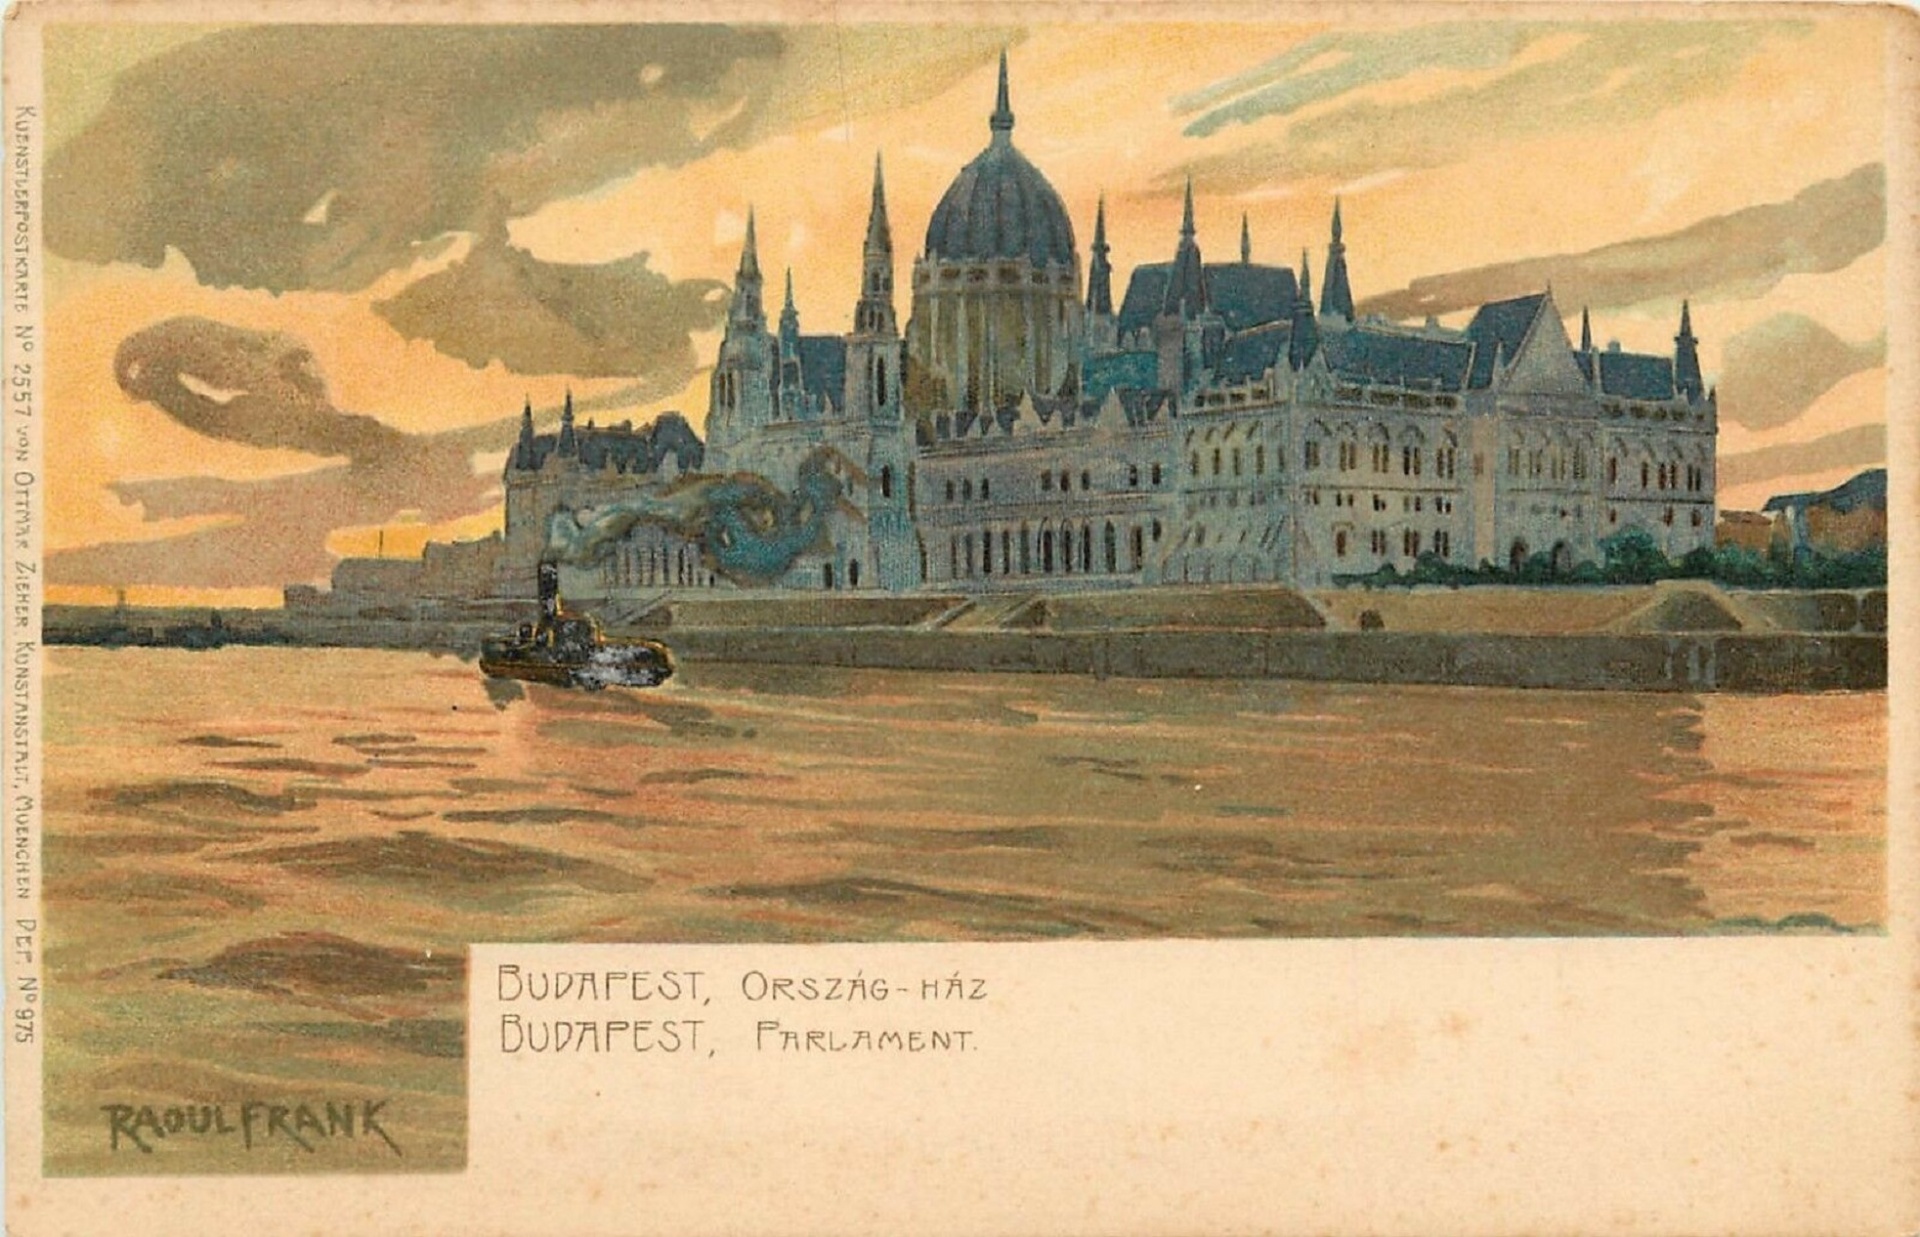 Budova maďarského parlamentu